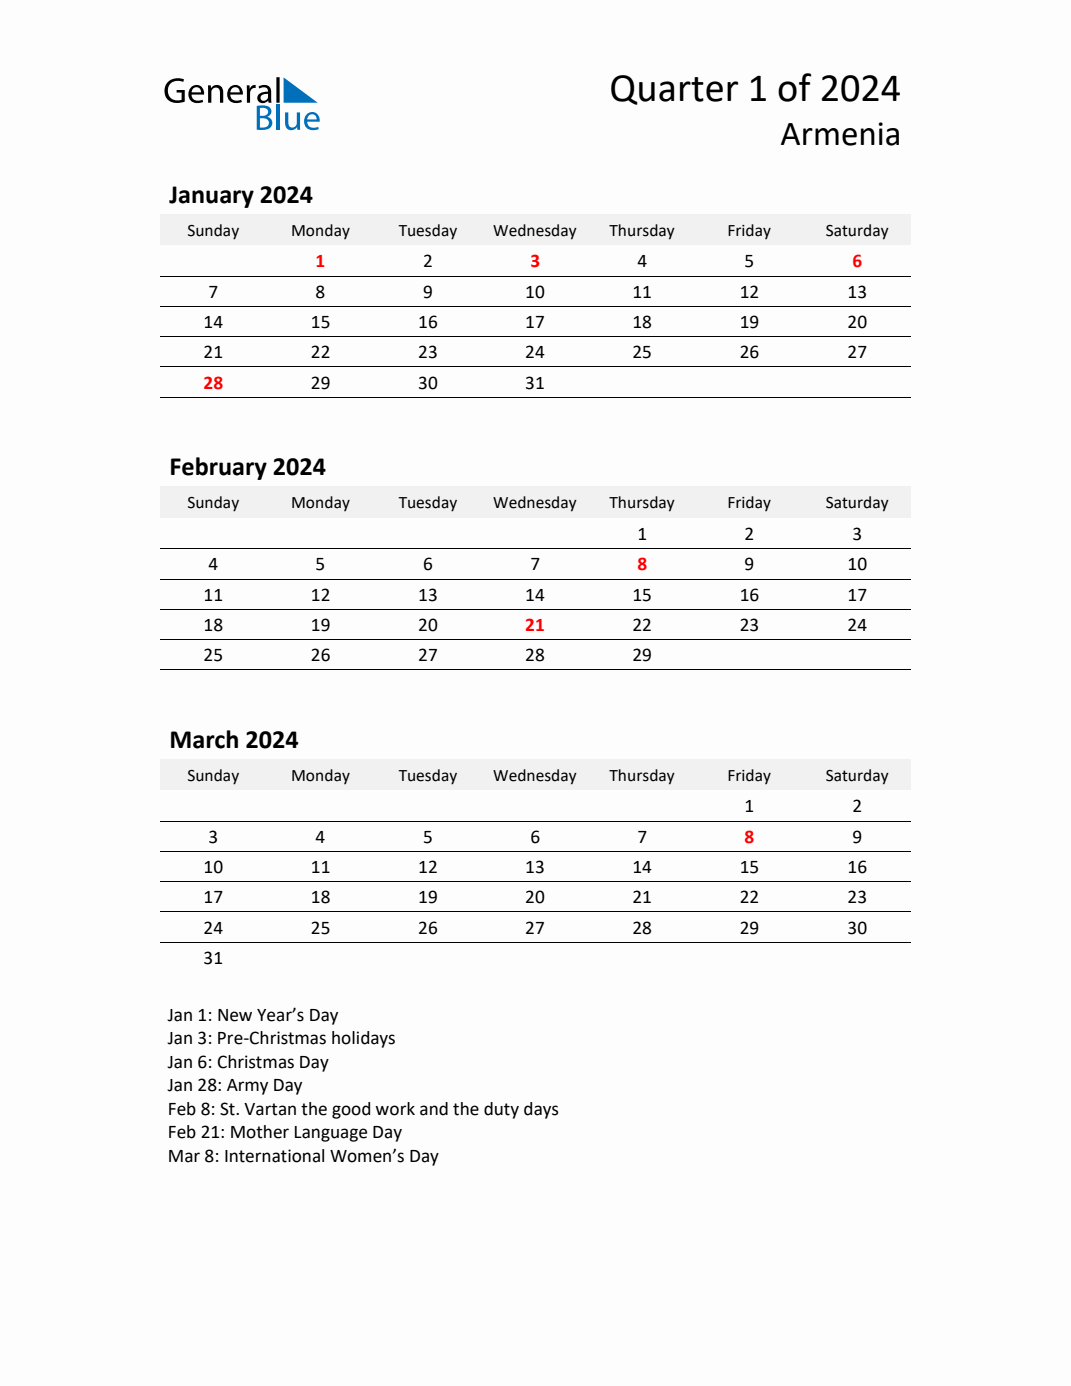 Q1 2024 Quarterly Calendar with Armenia Holidays